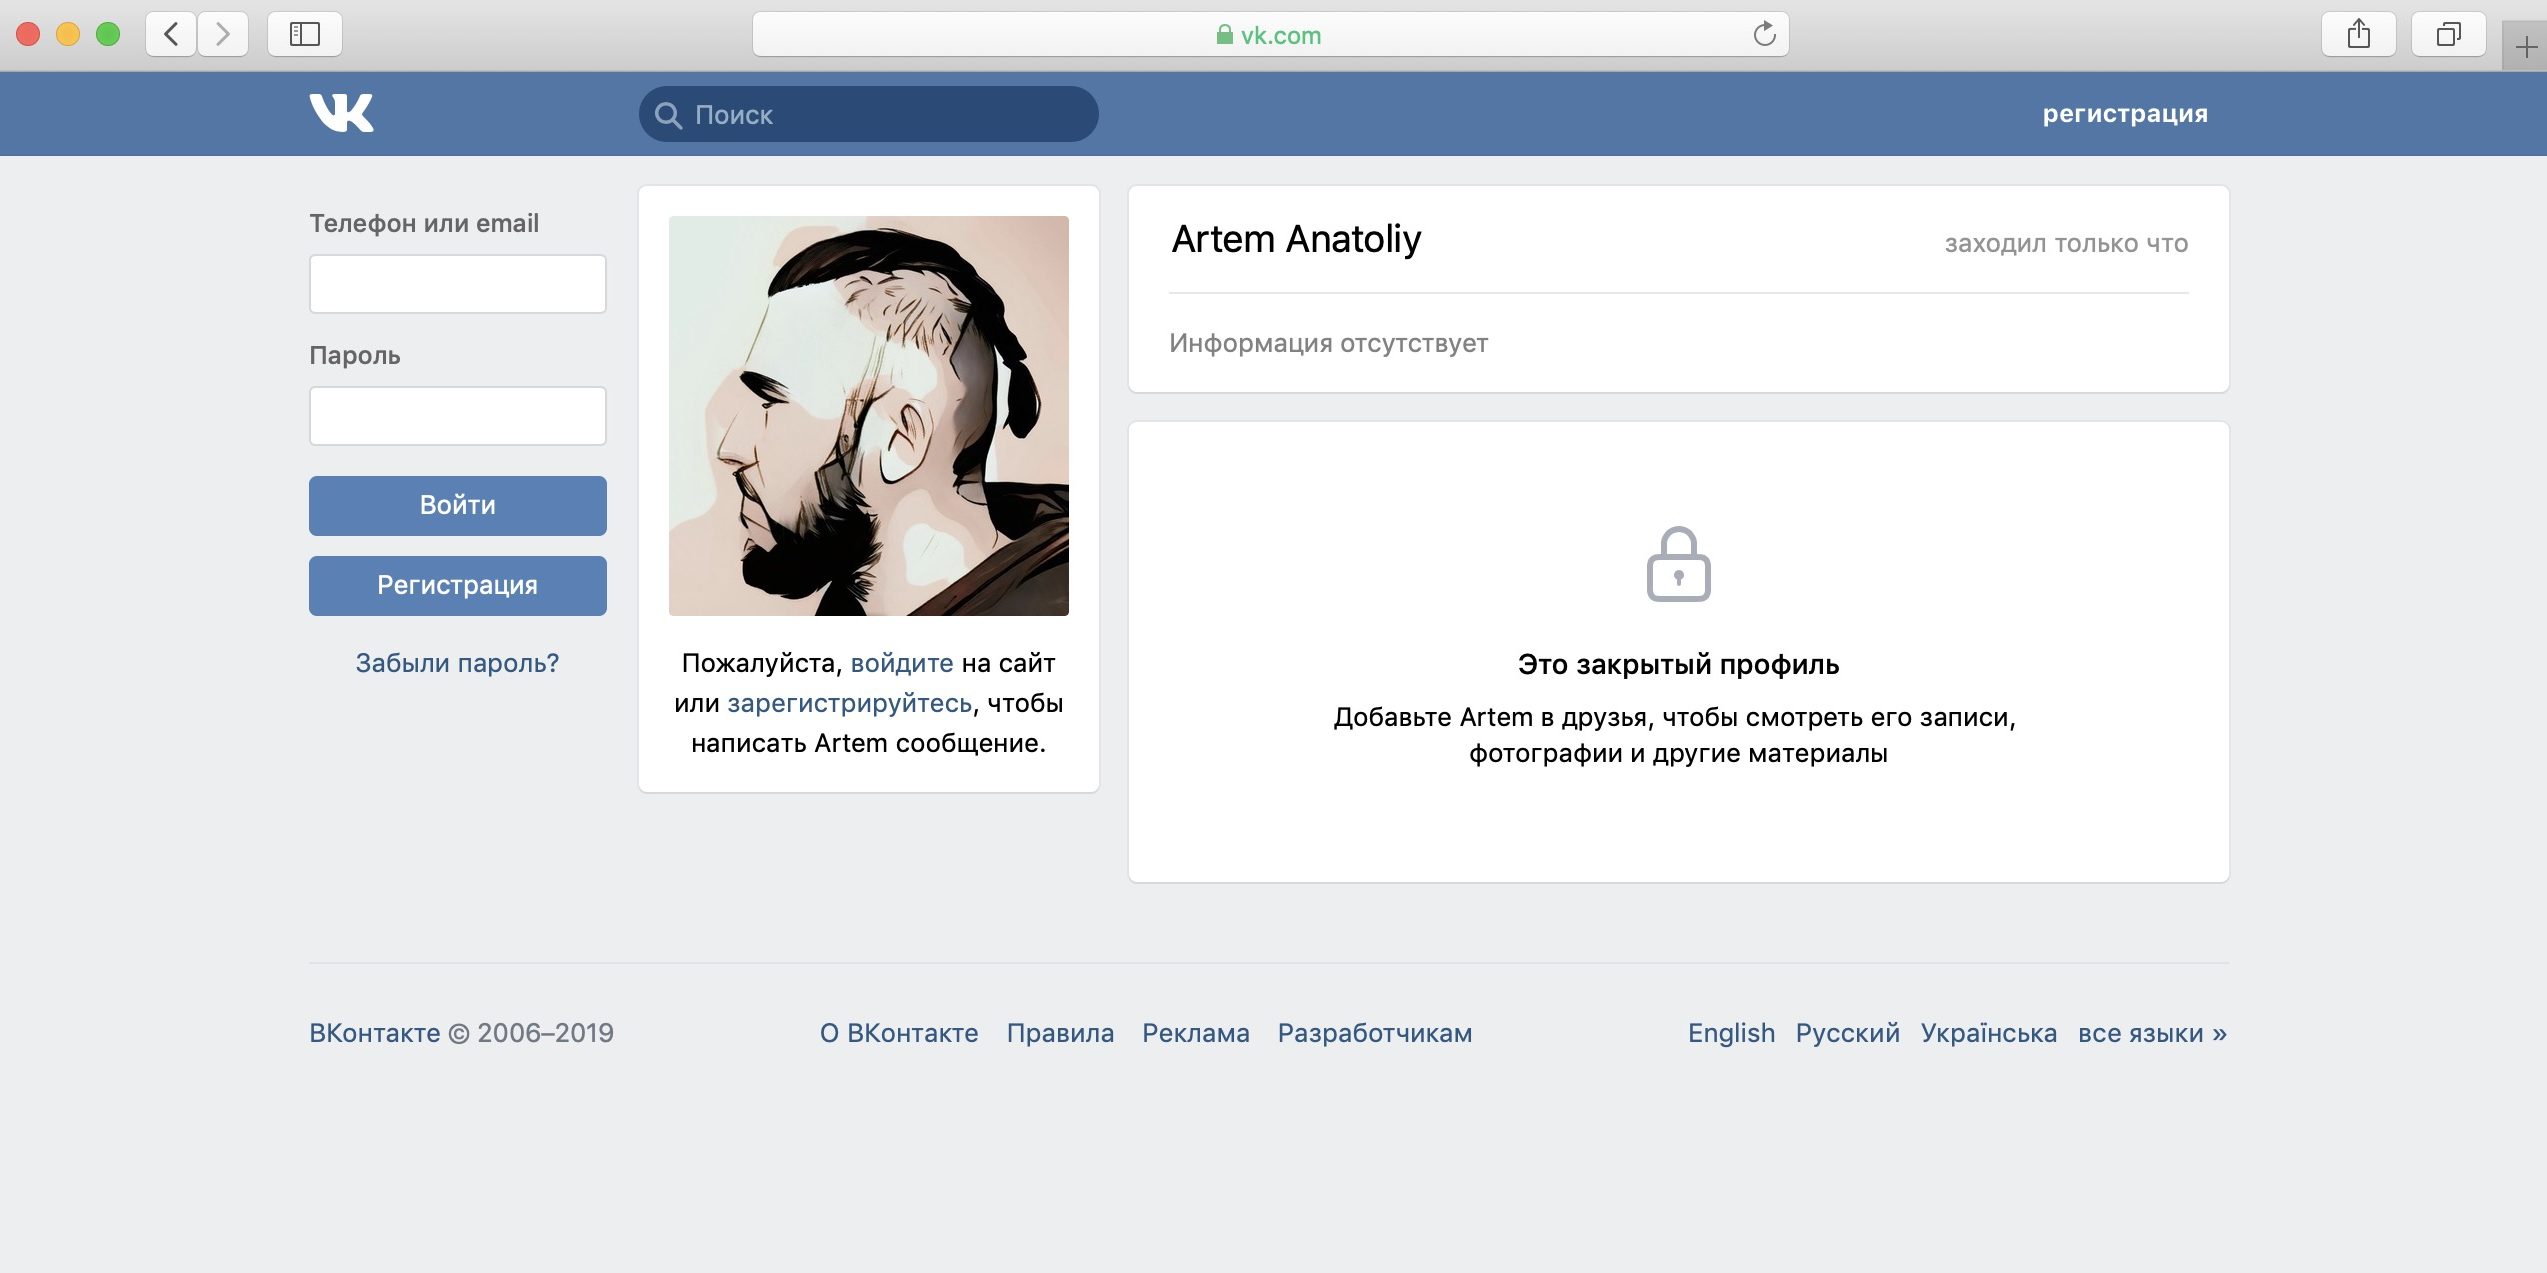 Как сделать группу ВКонтакте закрытой – пошаговое руководство к действию